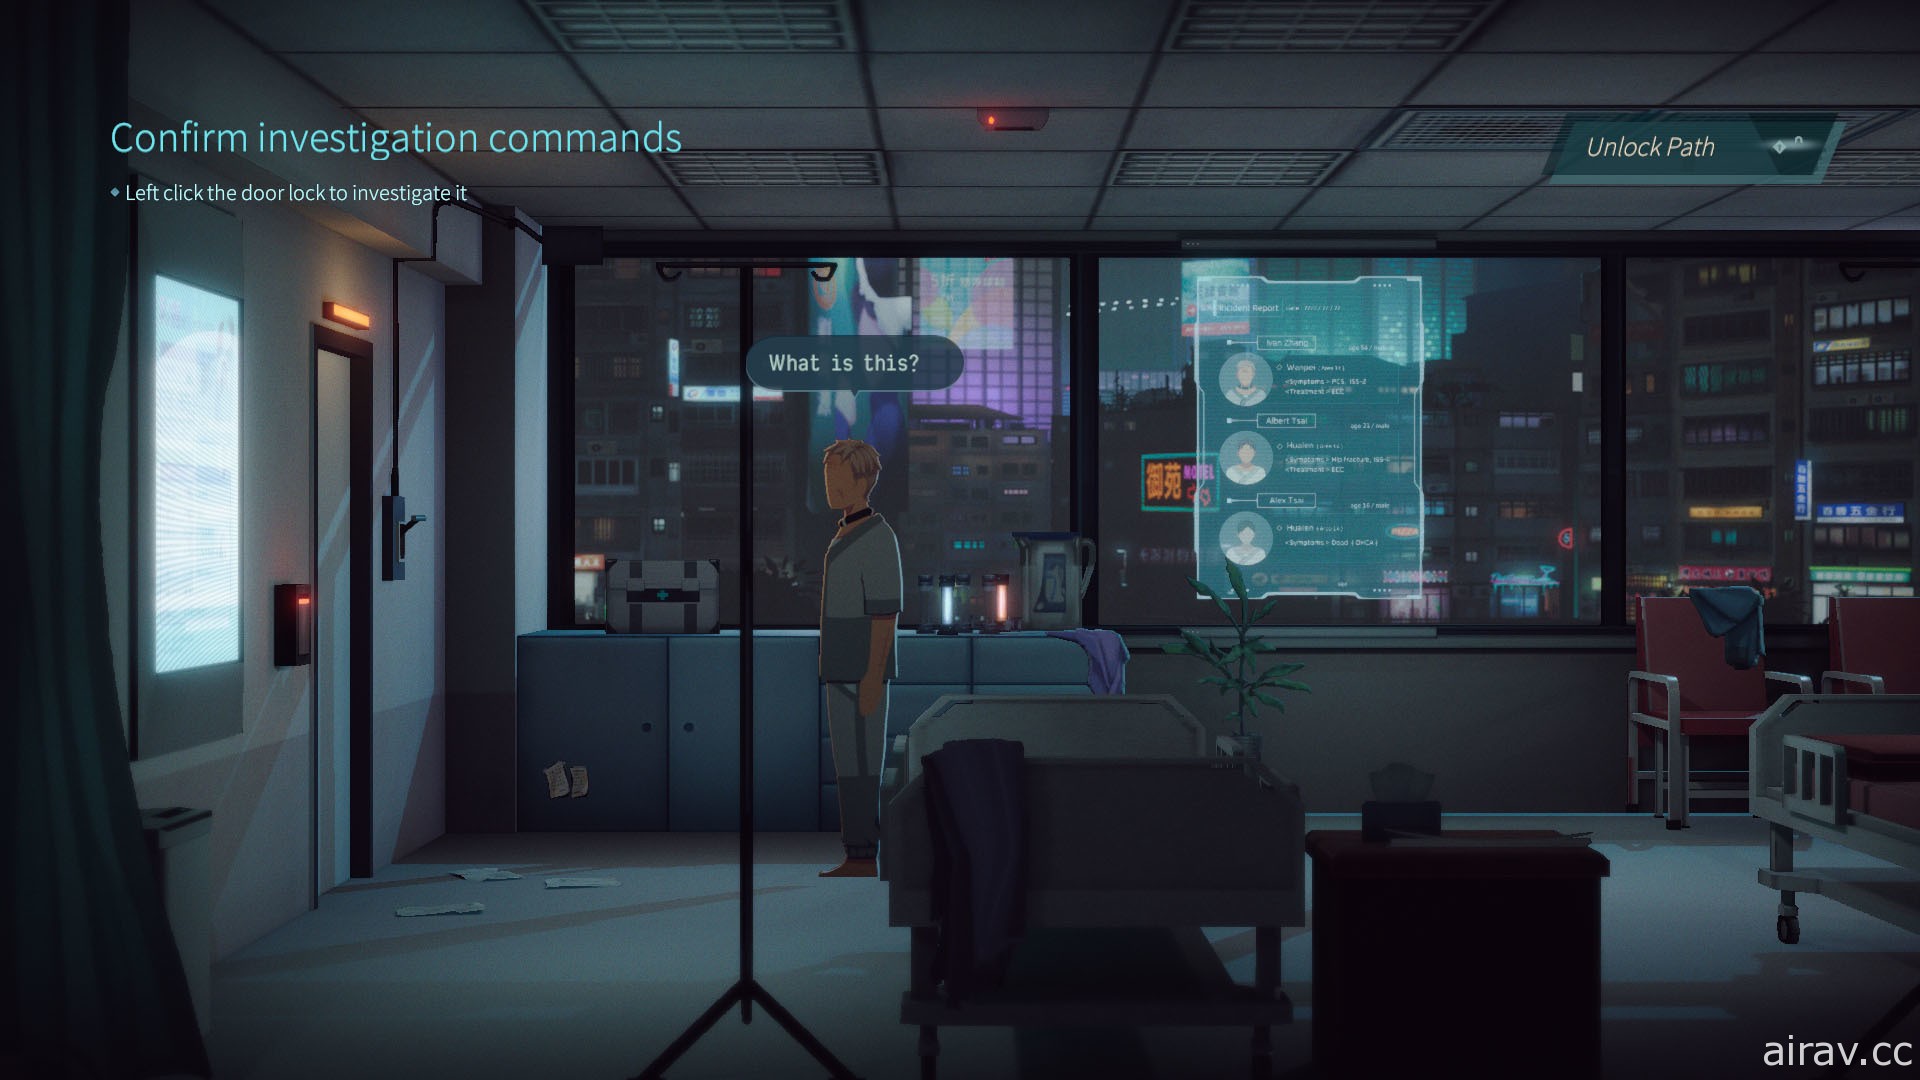 【E3 21】台灣題材 Cyberpunk 冒險遊戲《沉沒意志》曝光首部前導預告片